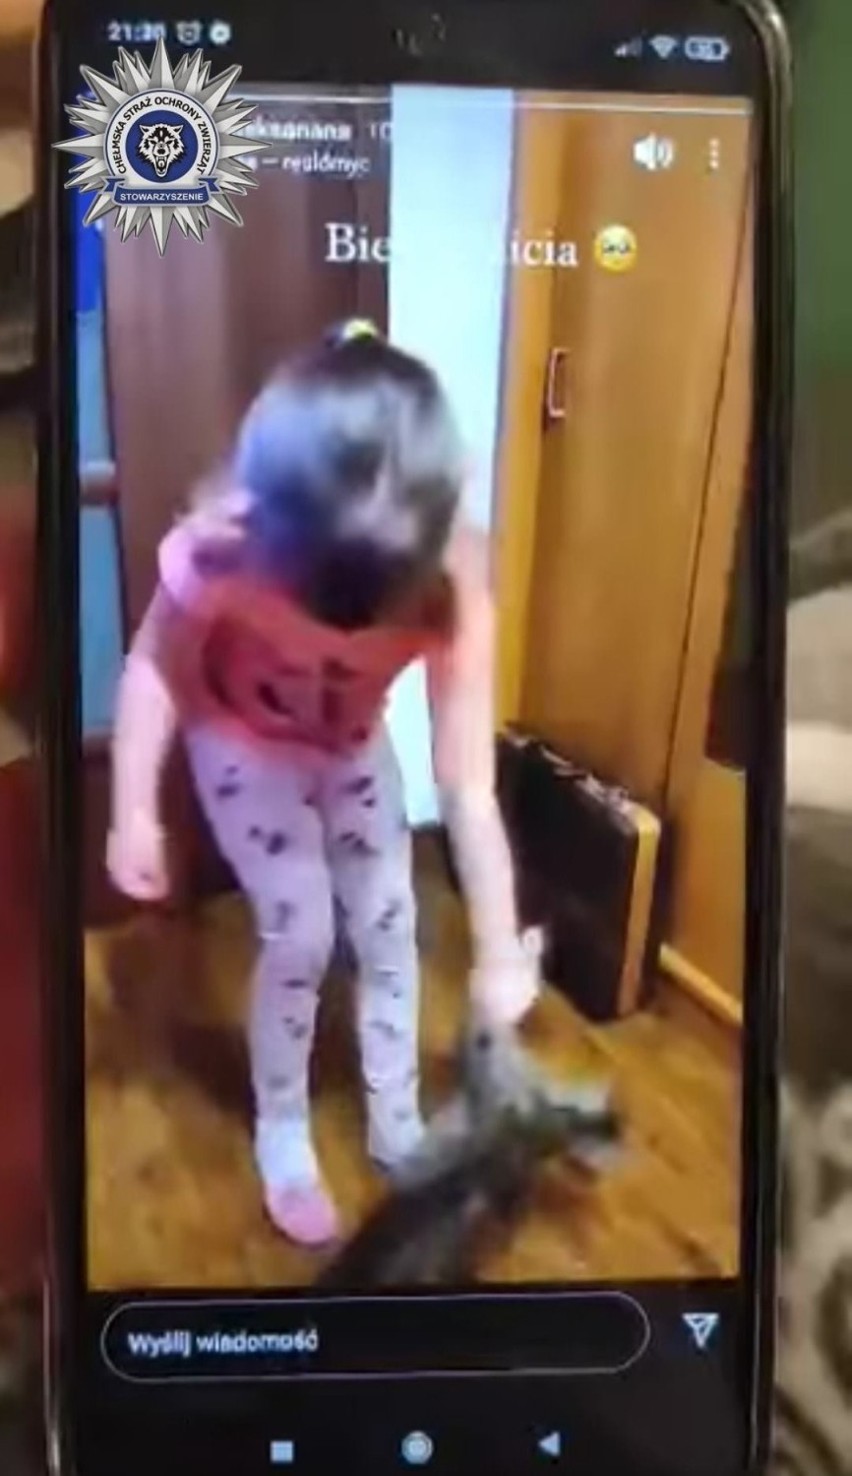 Pięciolatka z gminy Białopole znęcała się nad kotem. Zachęcała ją do tego opiekunka  